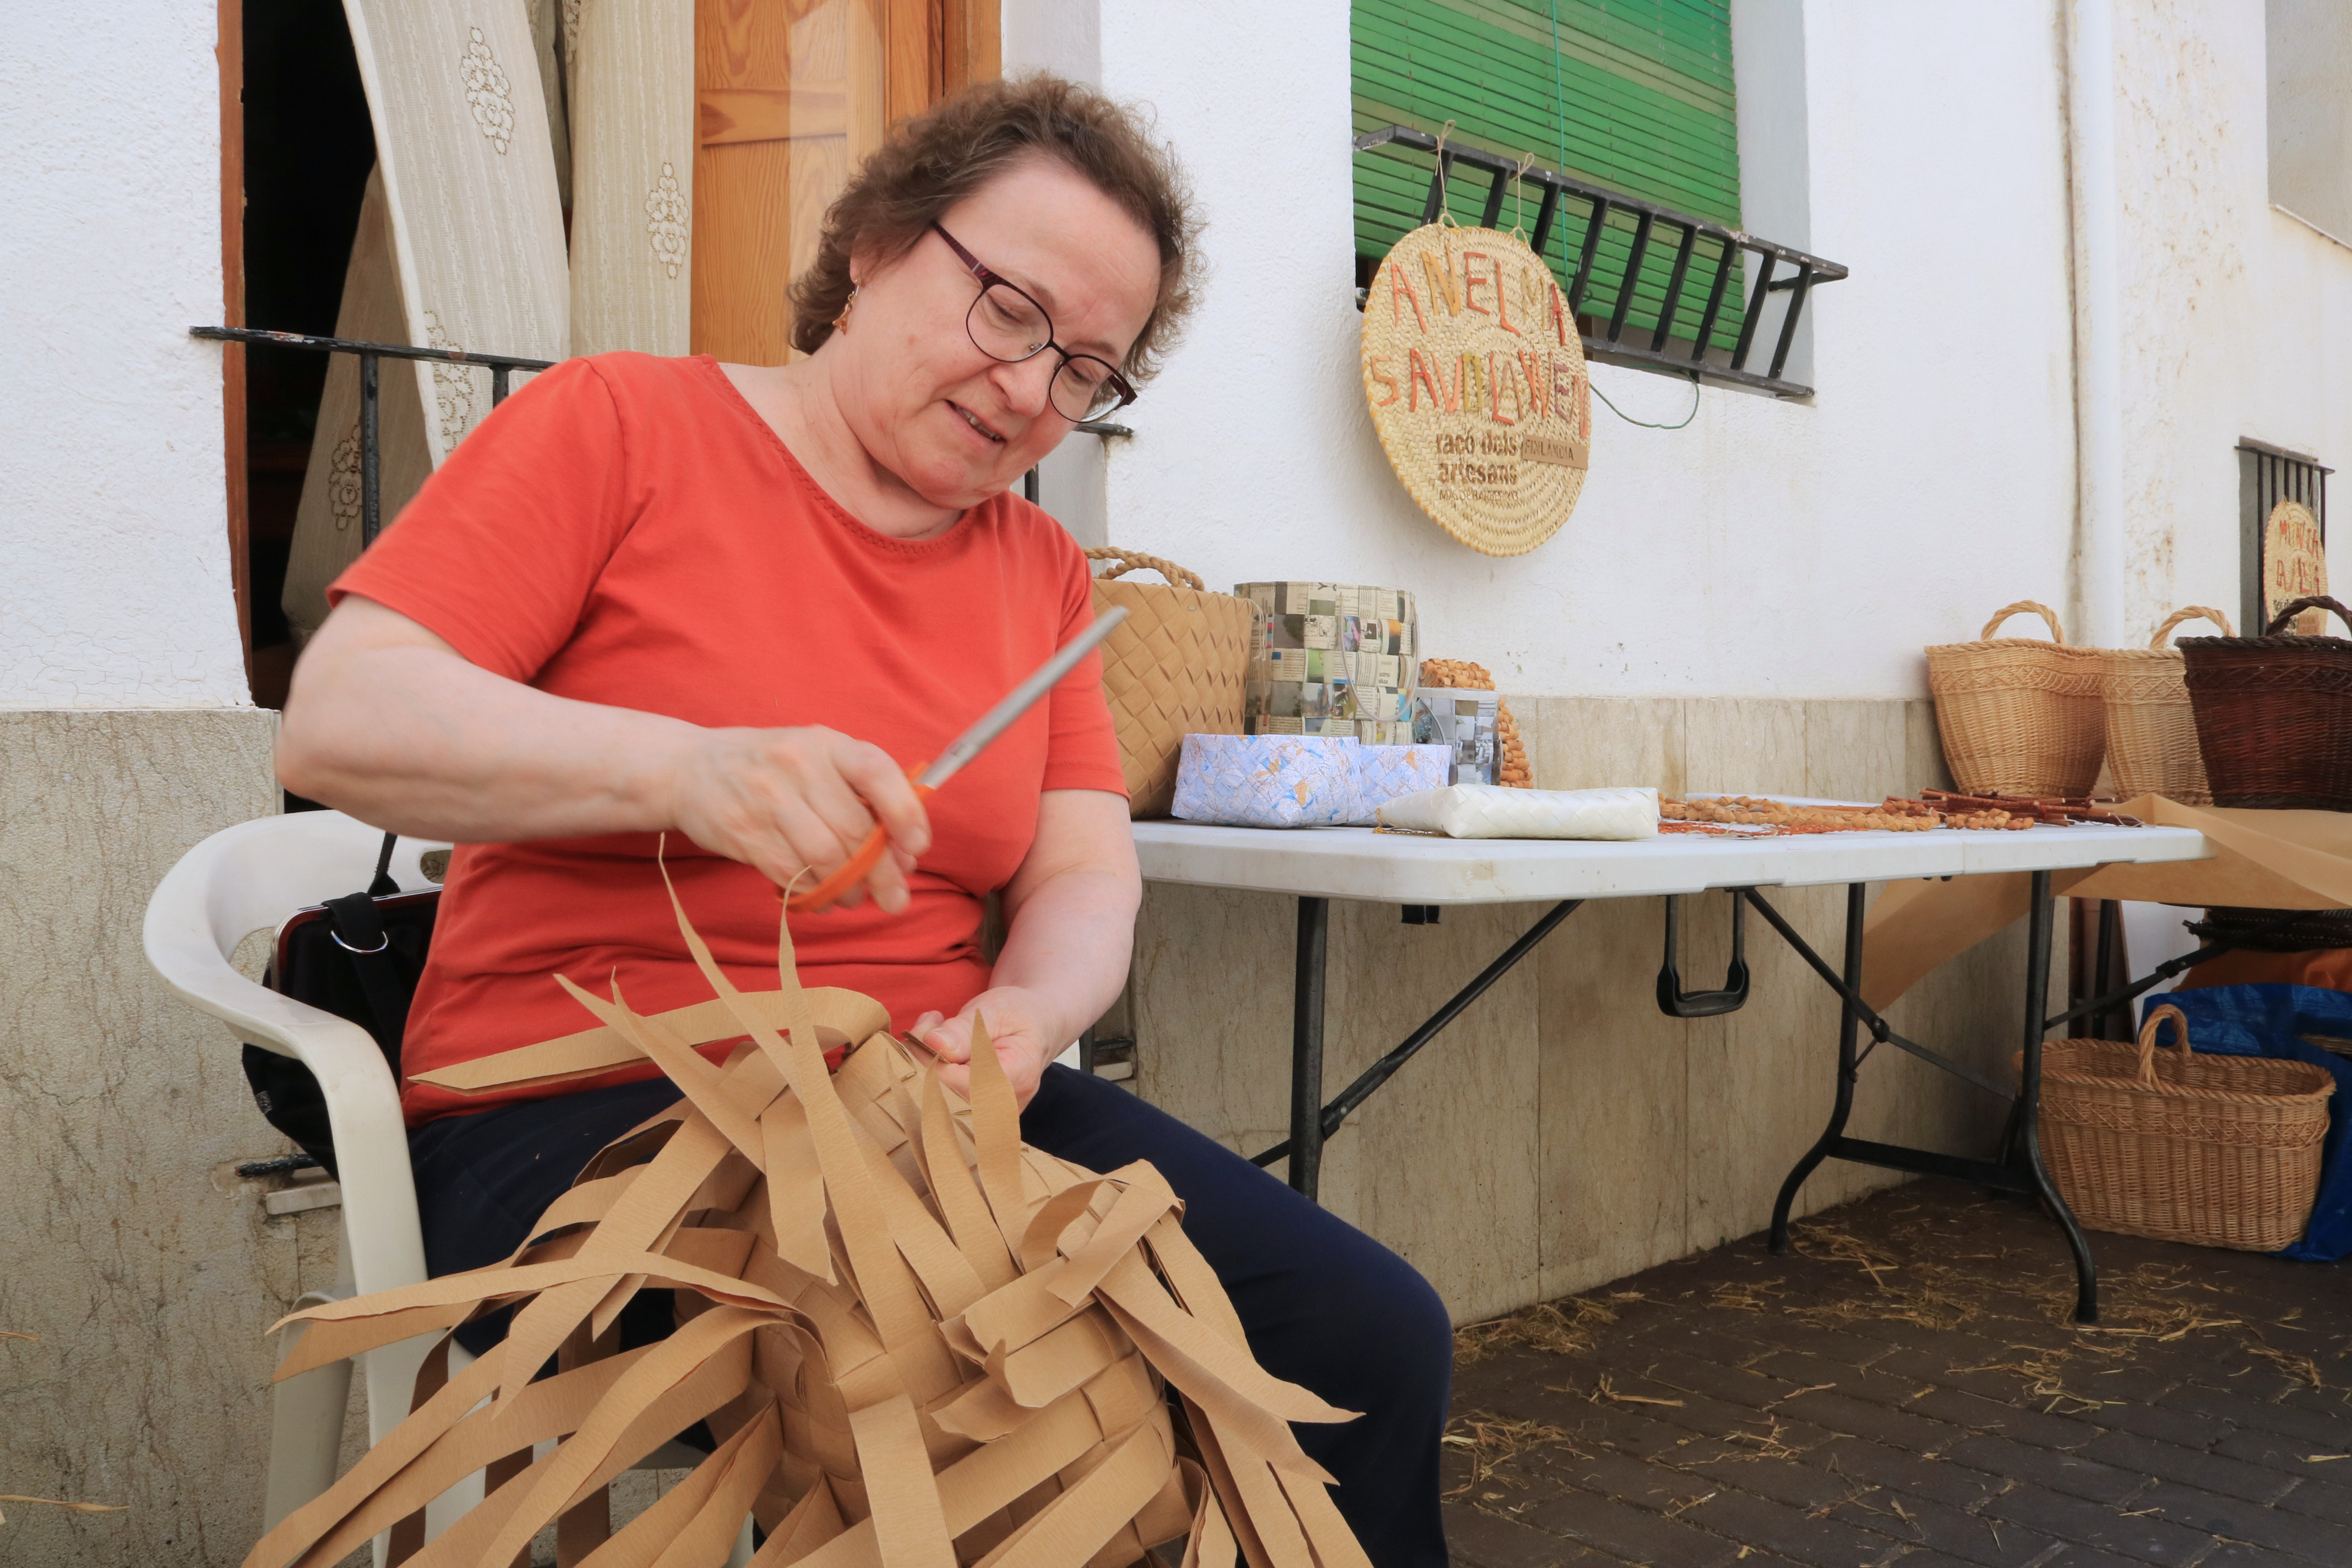 Artesans i artistes celebren 20 anys trenant fibres vegetals i dignificant l'ofici de les llatadores a Mas de Barberans